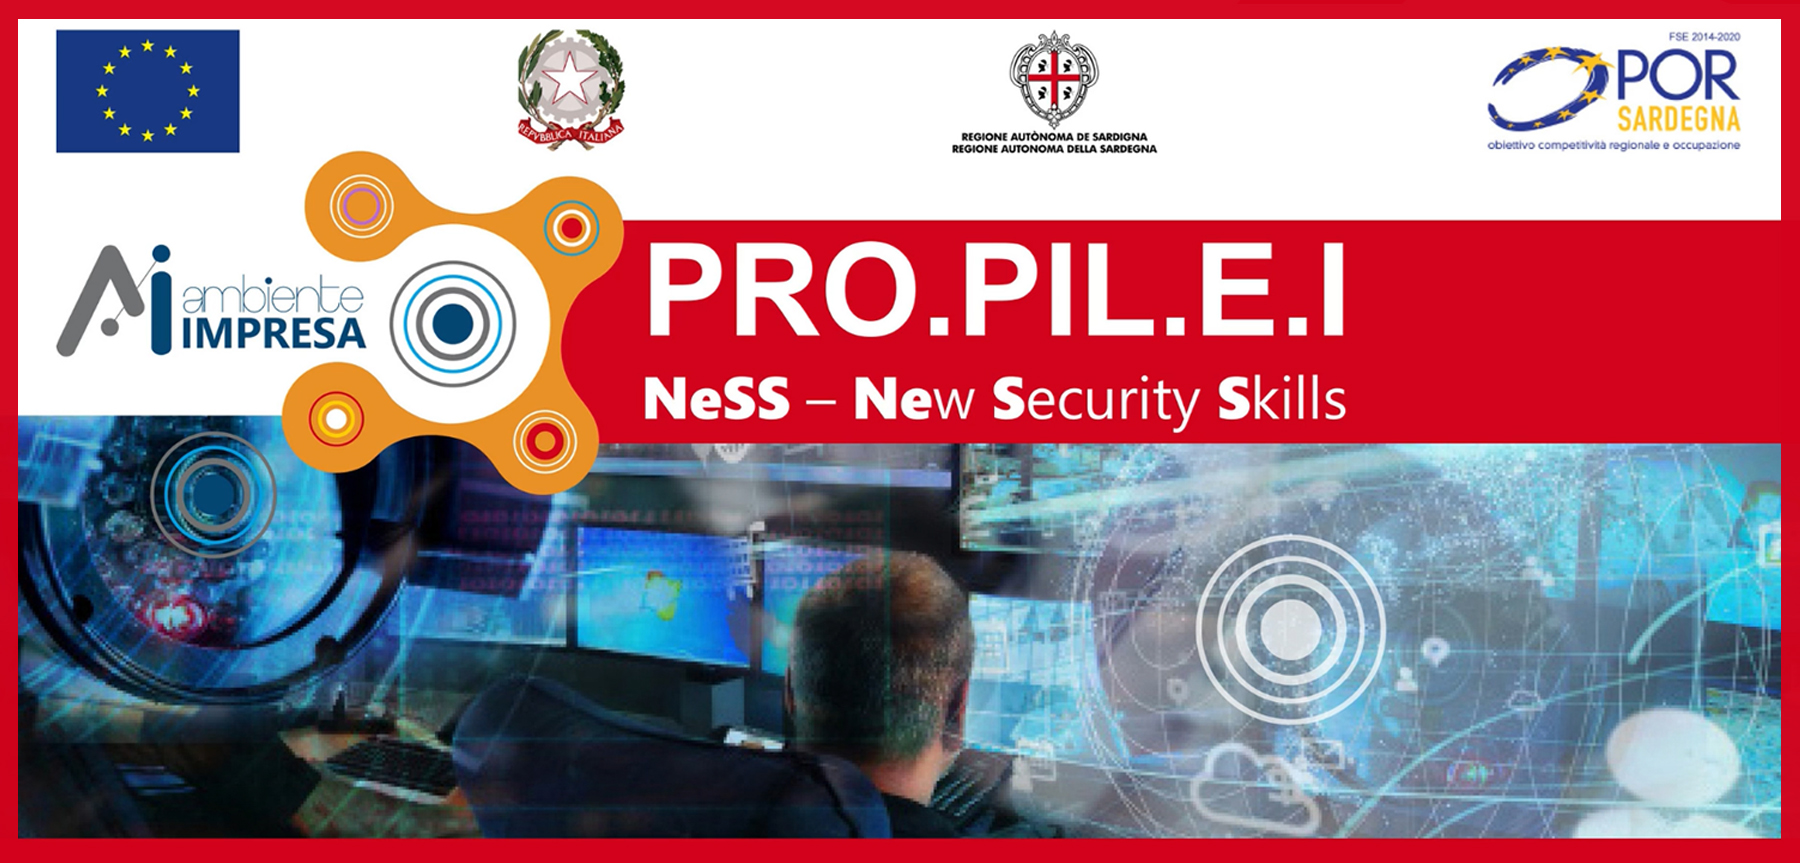 PROPILEI - NeSS - New Security Skill - Ambiente Impresa srl - Regione della Sardegna